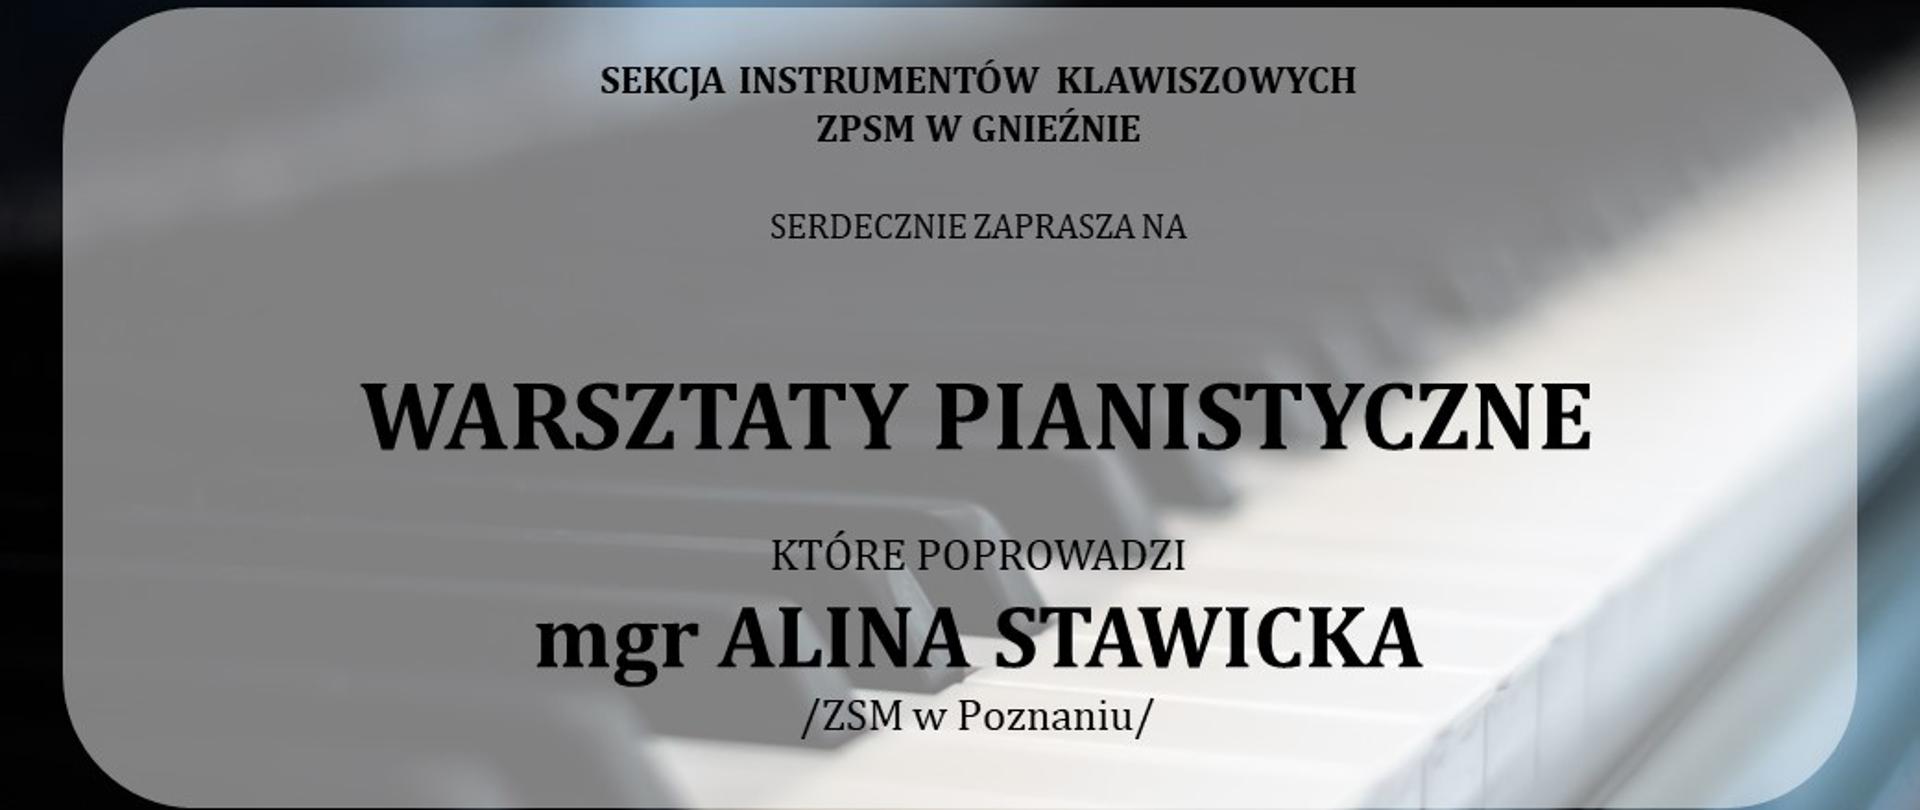 Plakat promujący warsztaty pianistyczne prowadzone przez mgr Alinę Stawicką